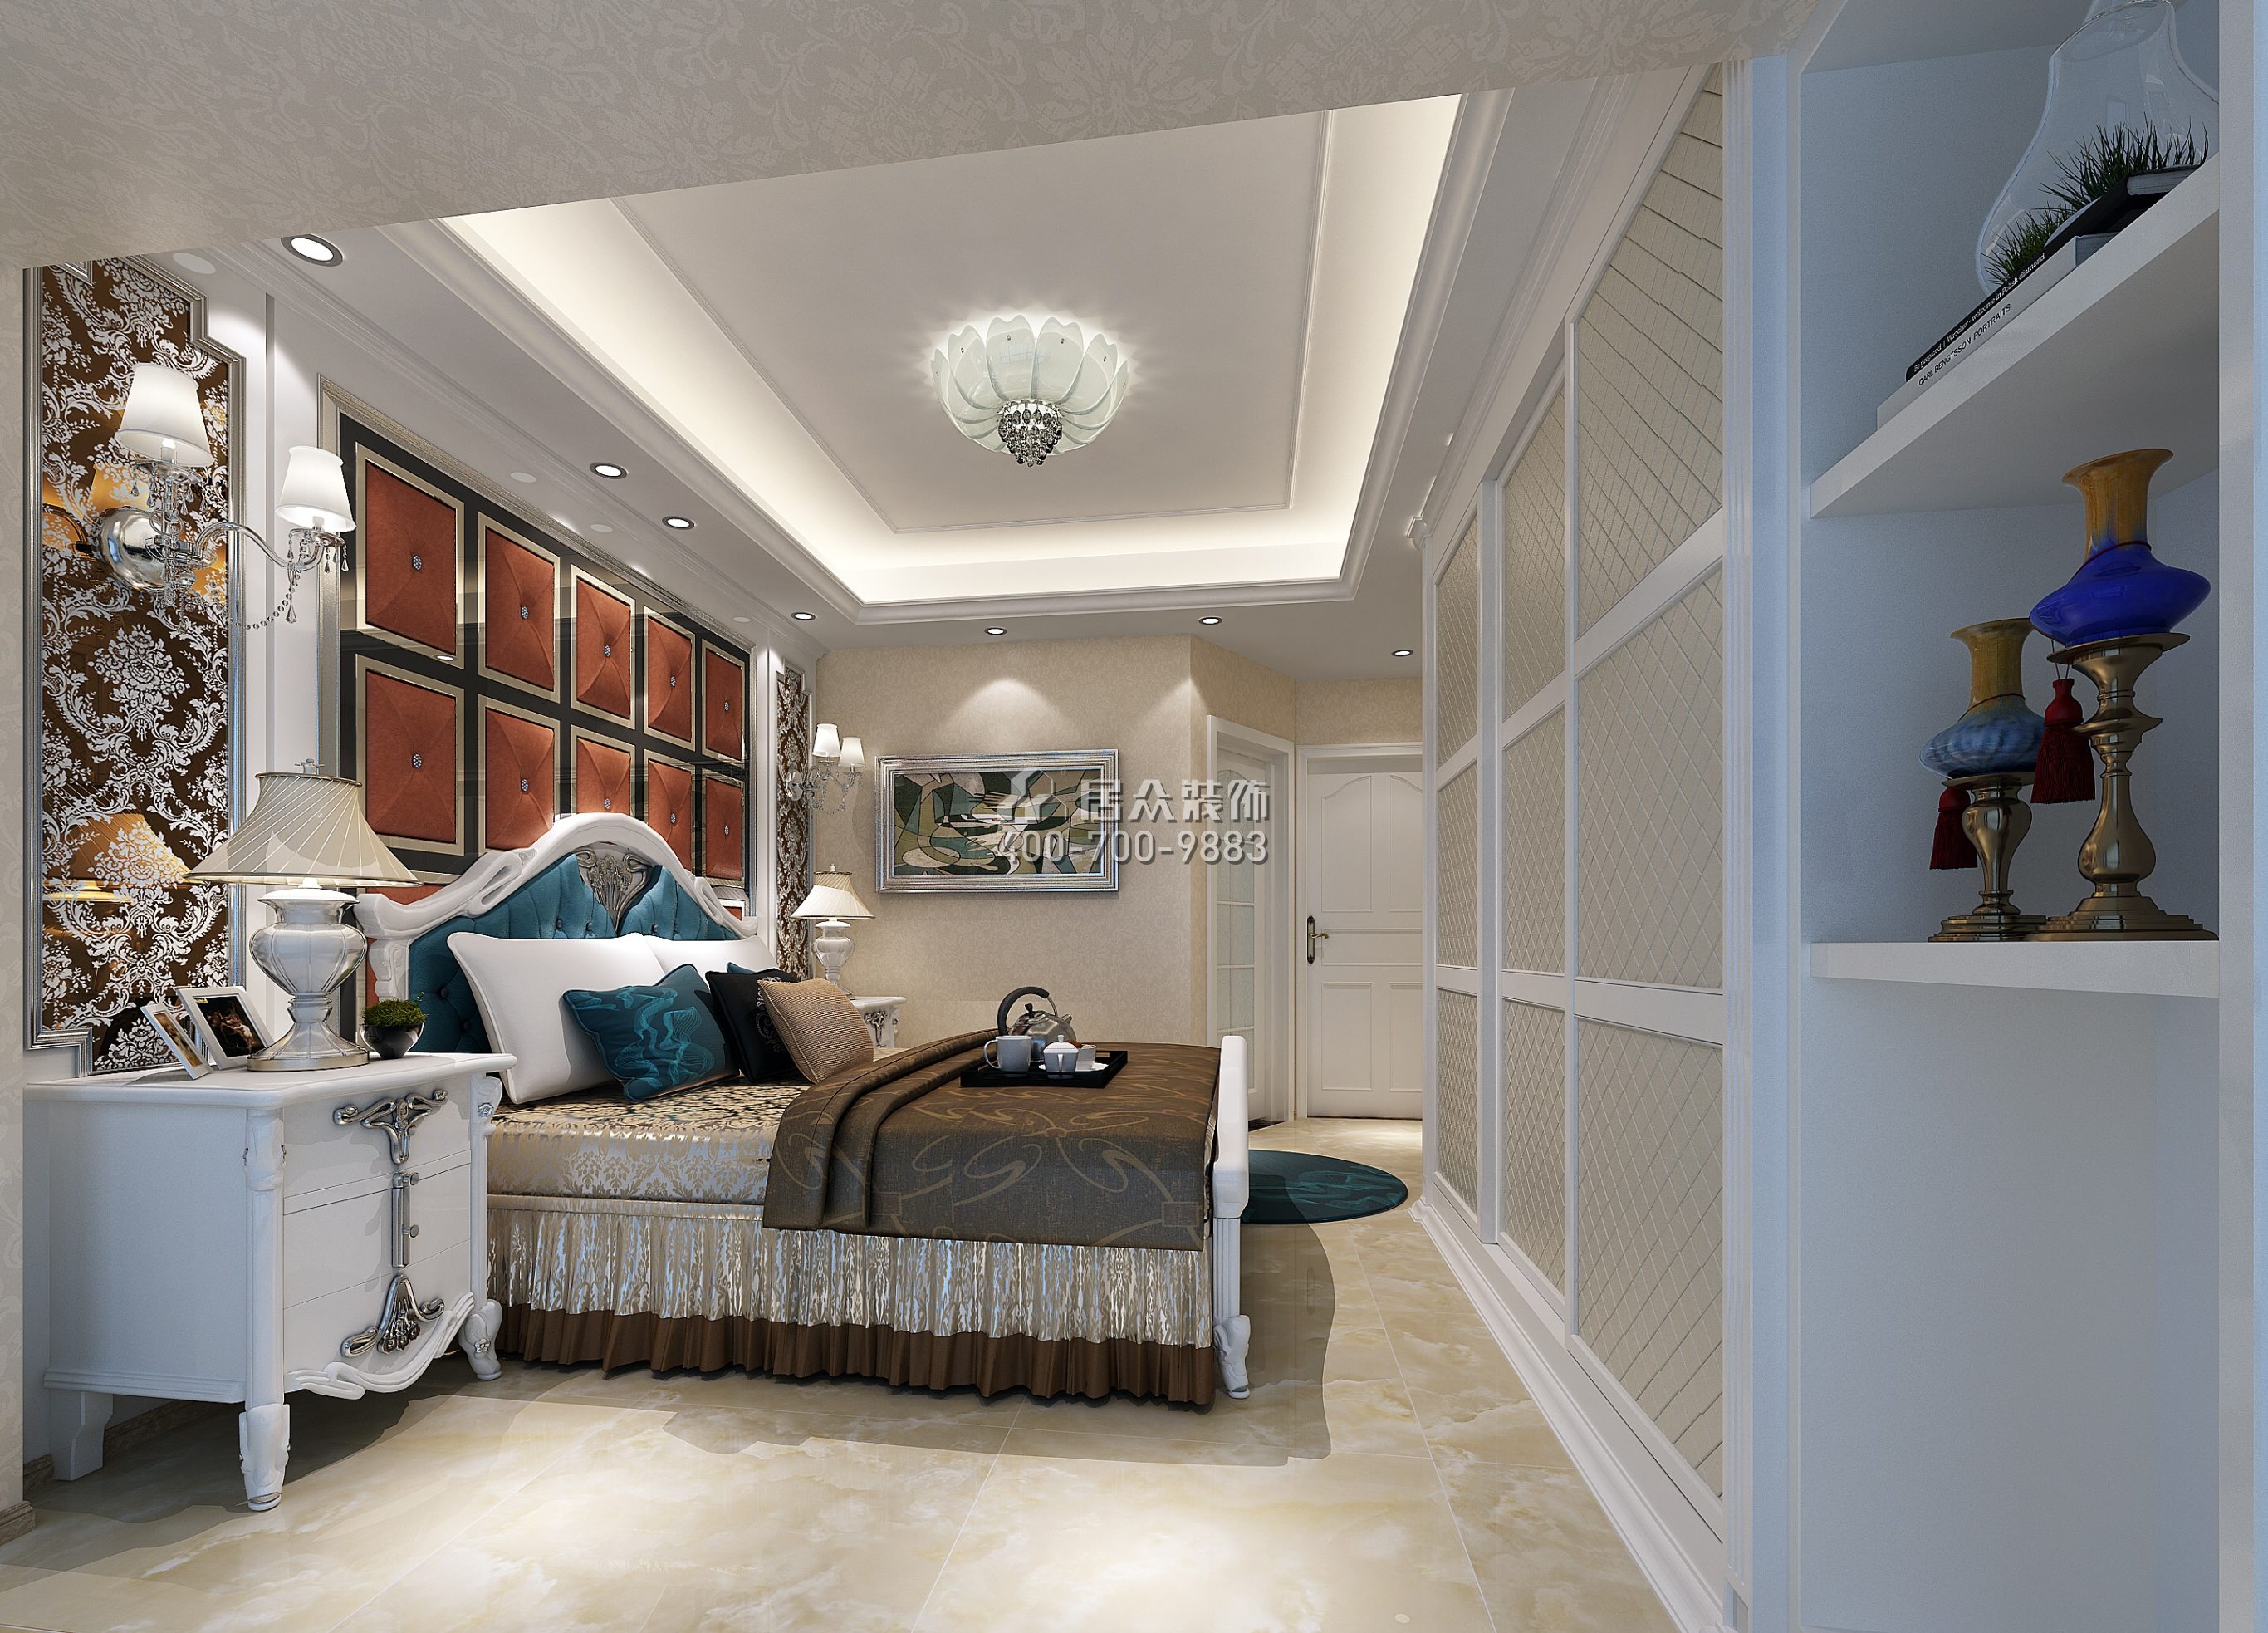 大運城邦四期92平方米美式風格平層戶型臥室裝修效果圖